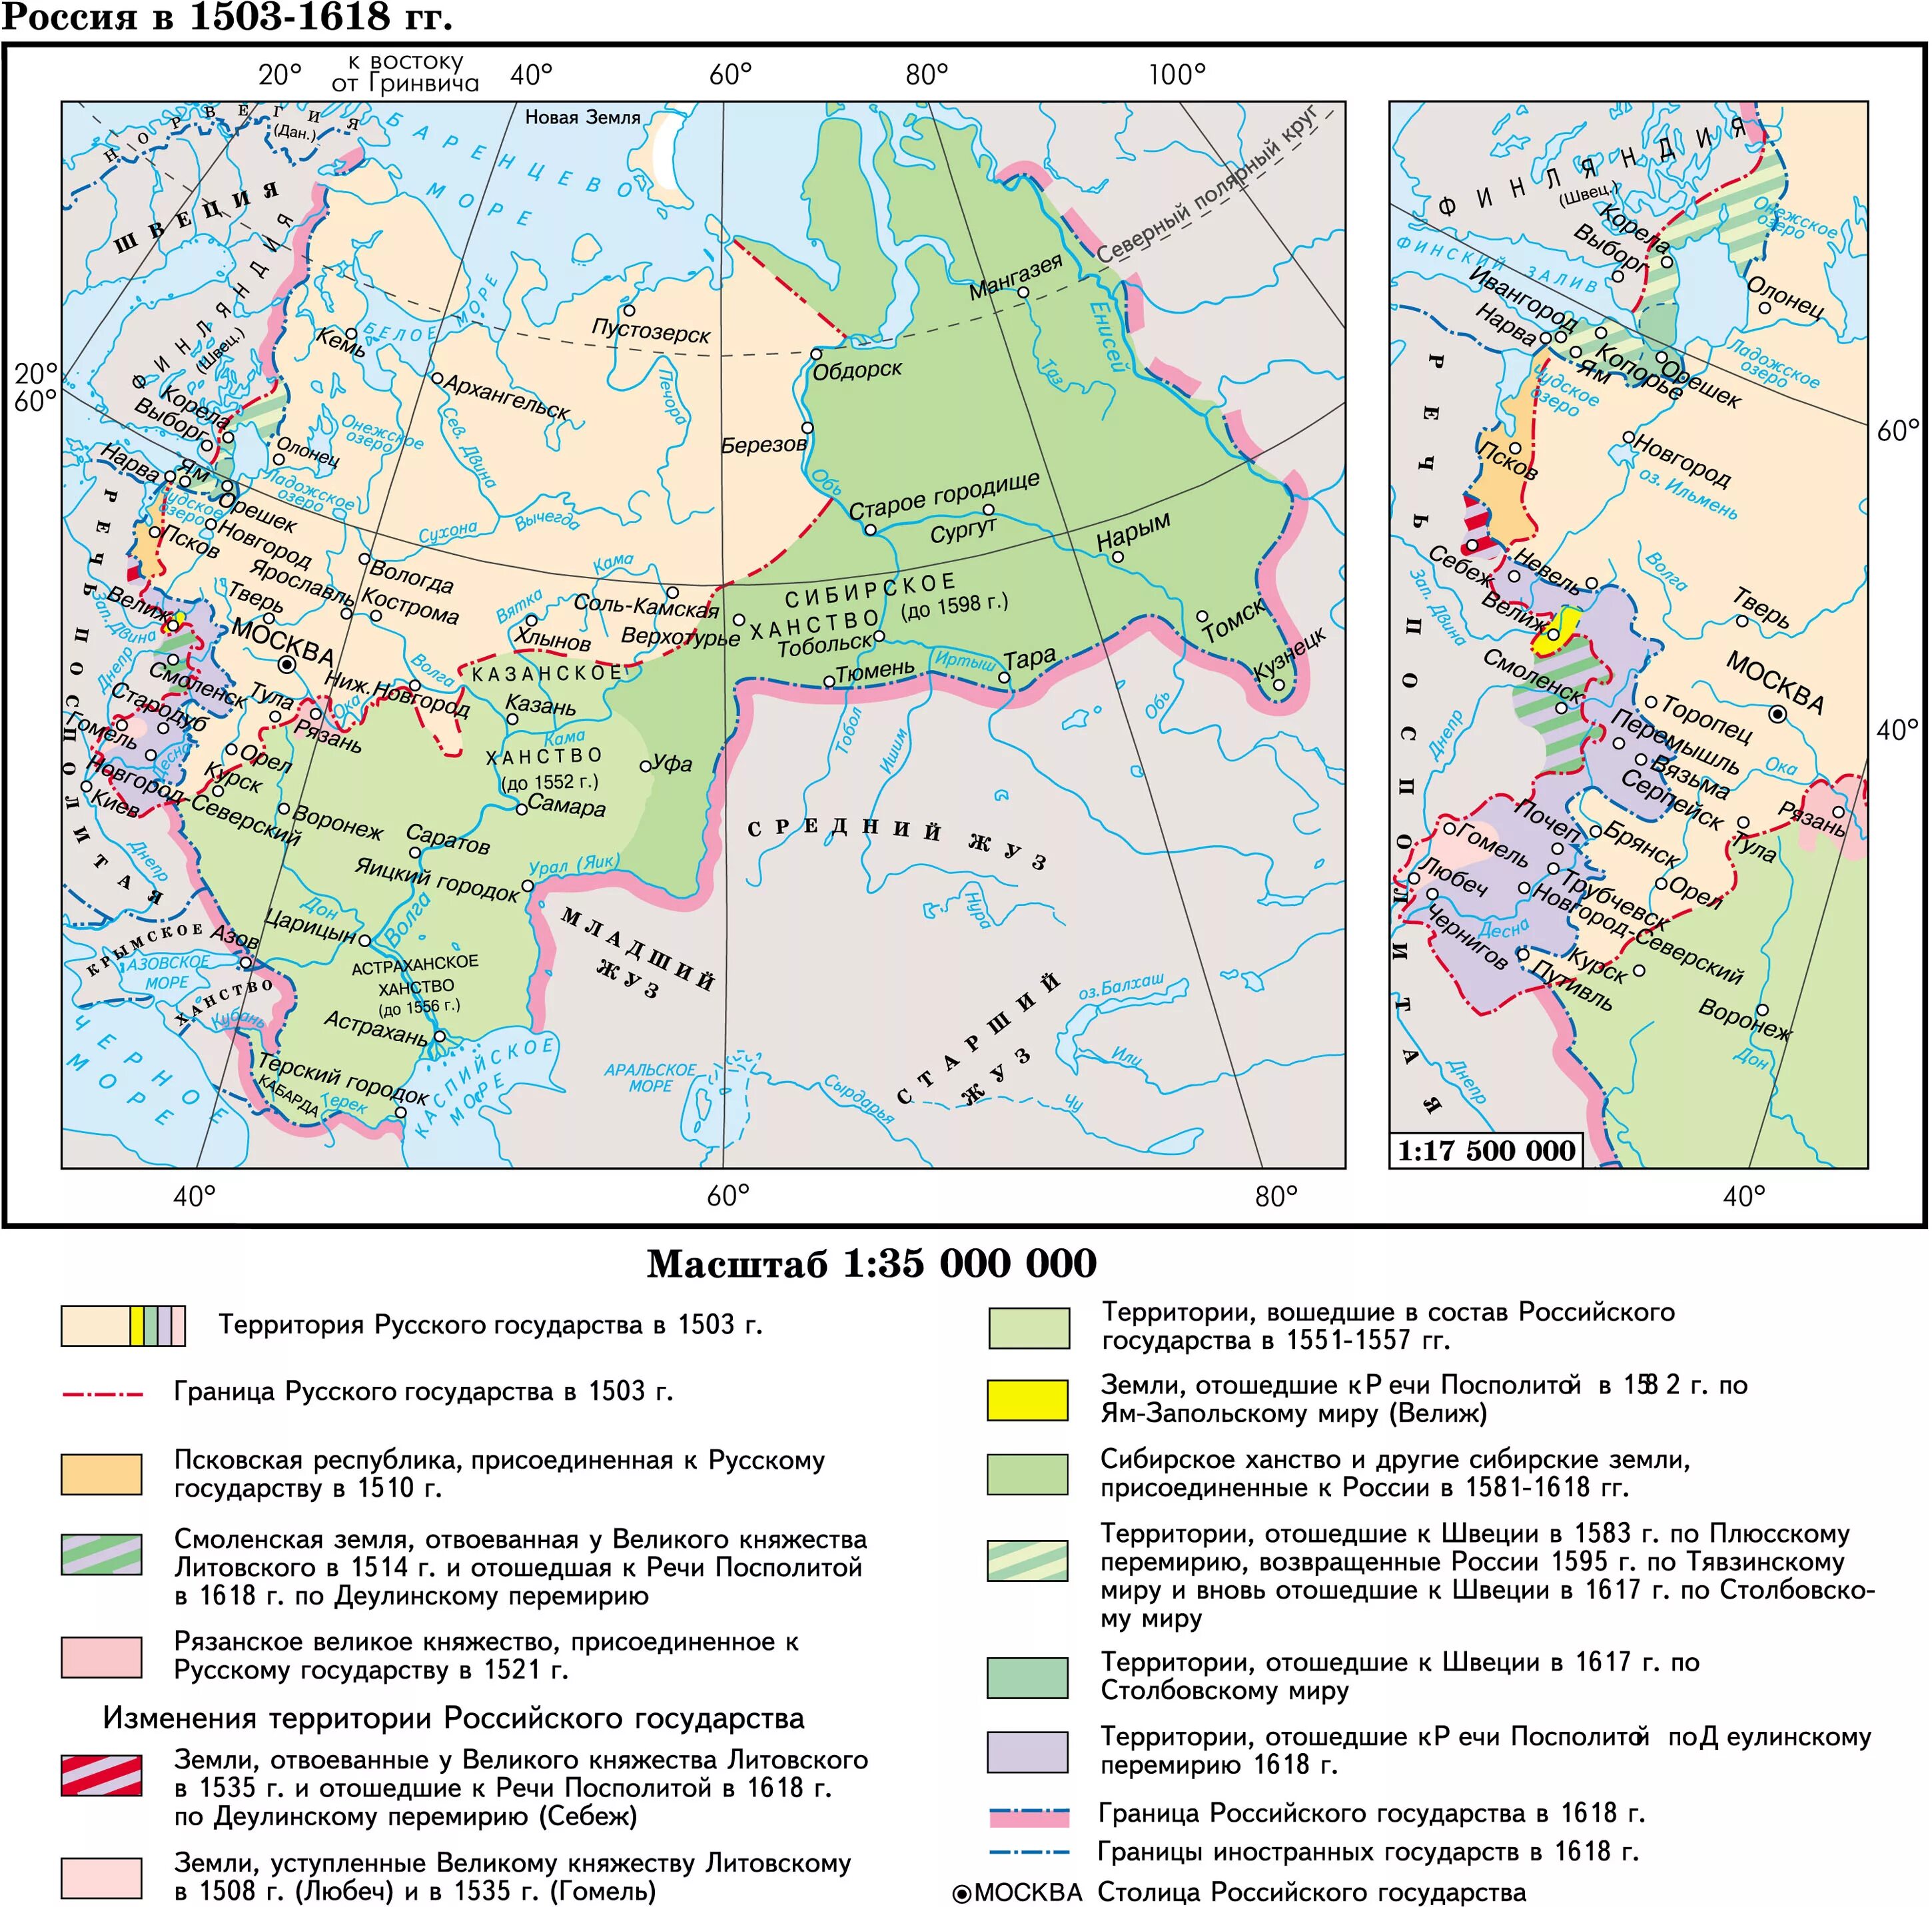 1618 год мирный договор. Карта Российской империи 16 века. Территория российского государства в 1618 году. Карта Российской империи 16 век. Границы российского государства в 16 веке карта.